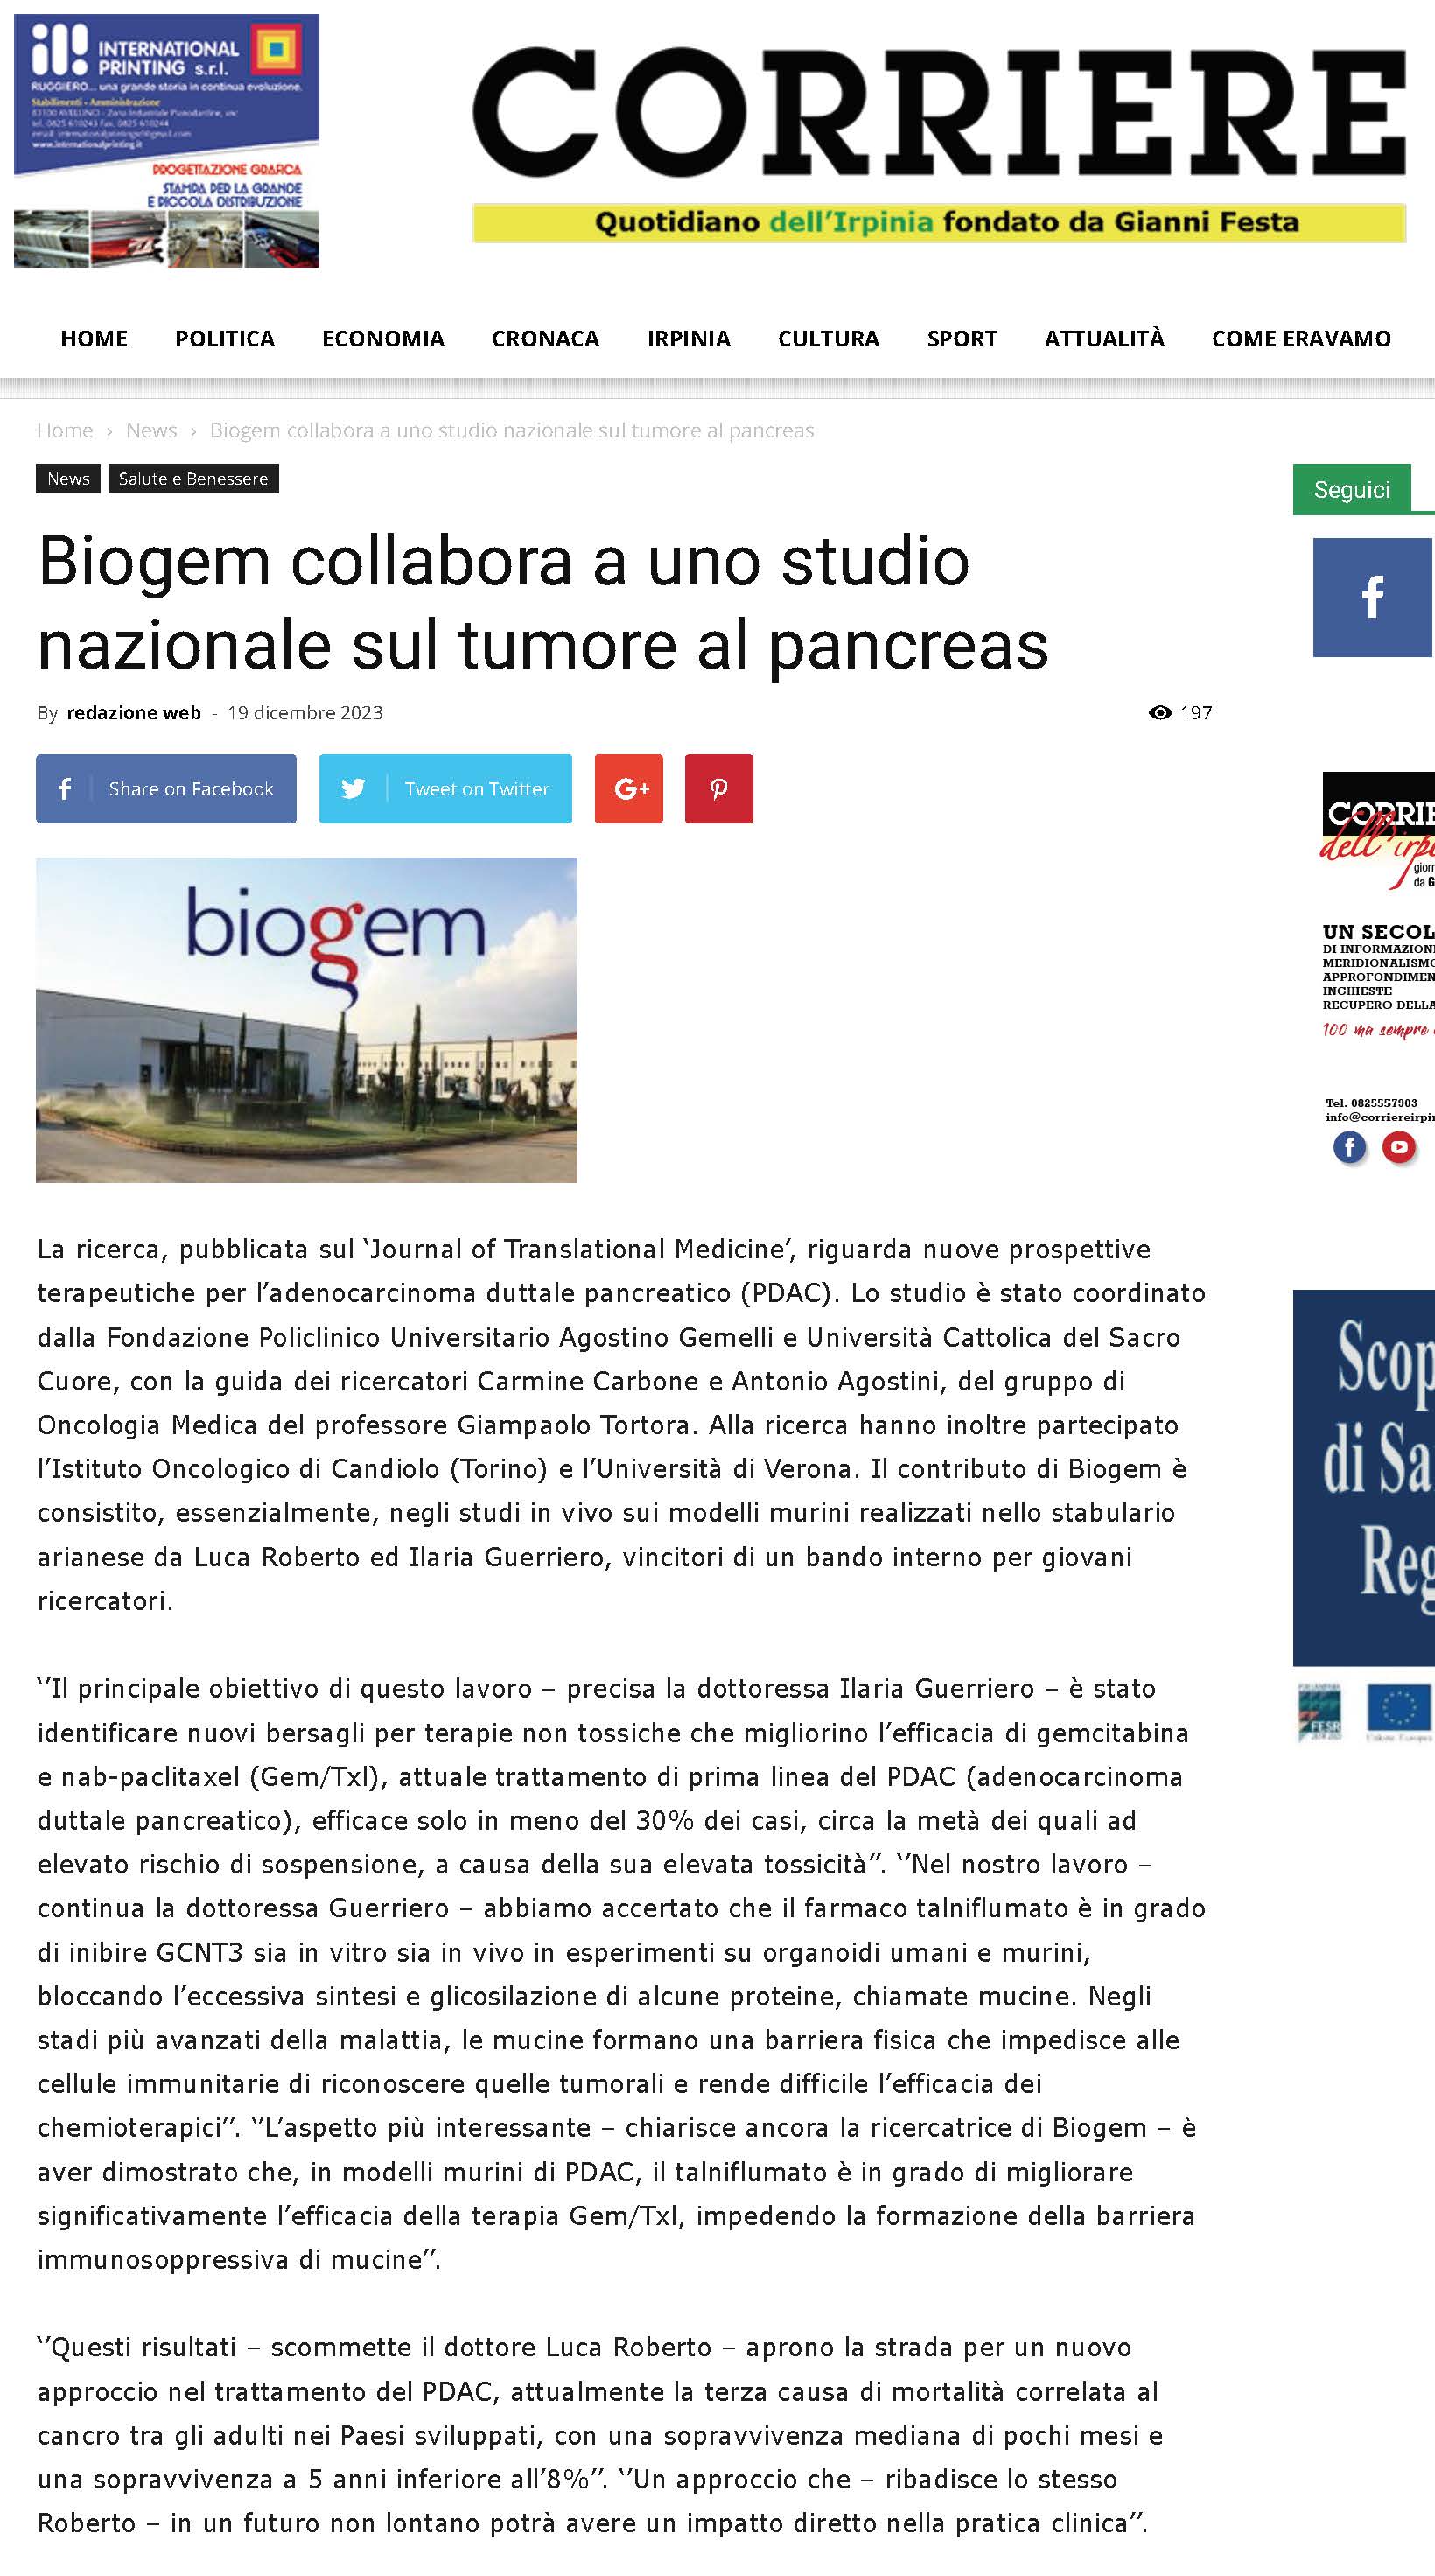 Biogem collabora a uno studio nazionale sul tumore al pancreas